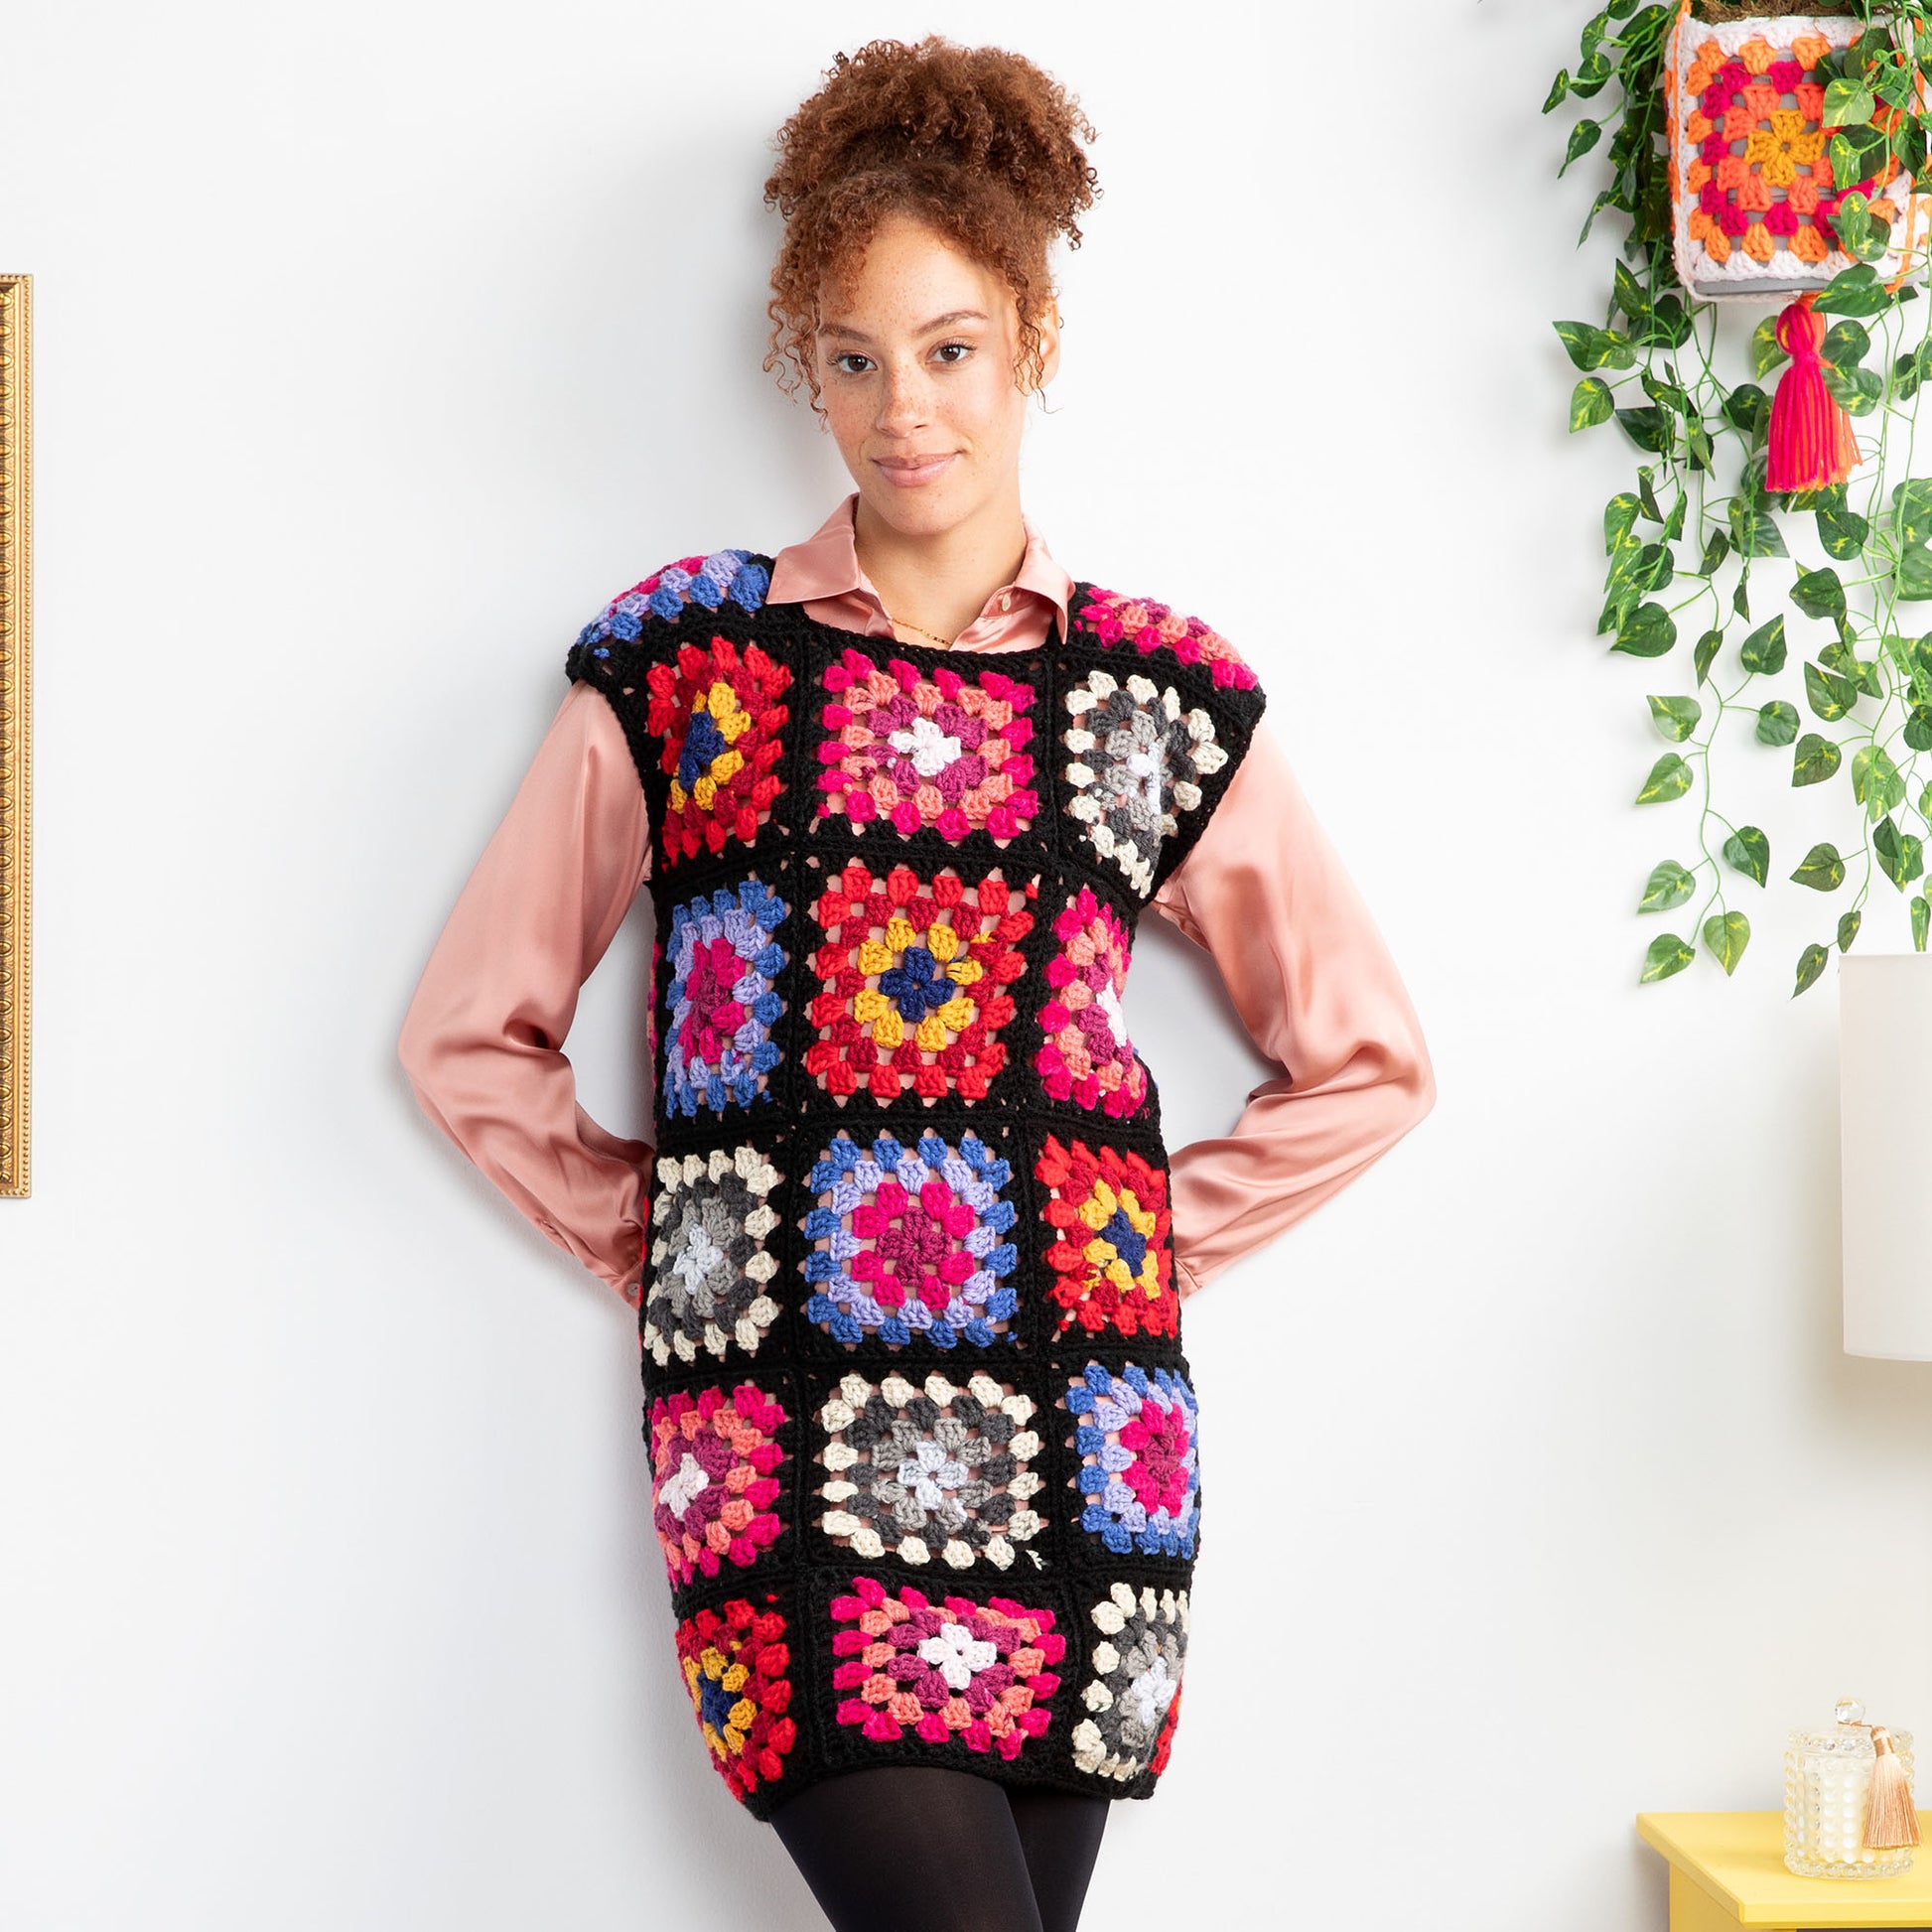 Free Red Heart Best in Dress Crochet Shift Dress Pattern